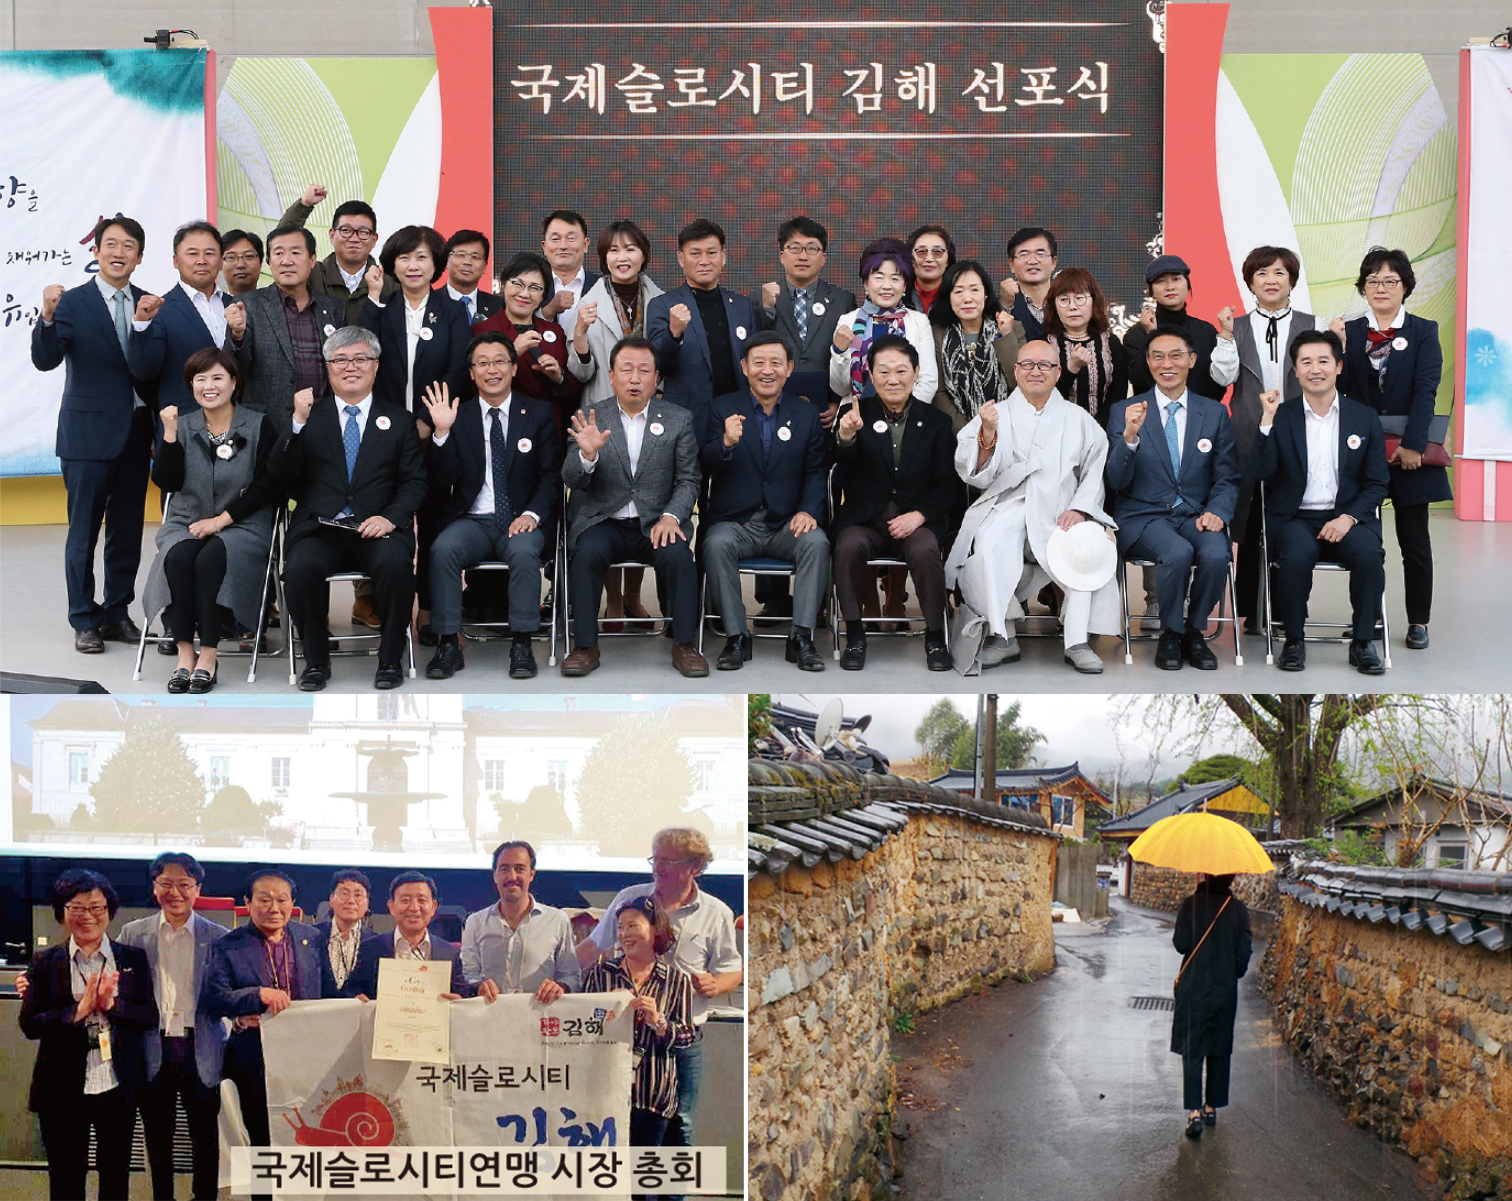 김해시, '국제슬로시티' 선포식 개최1